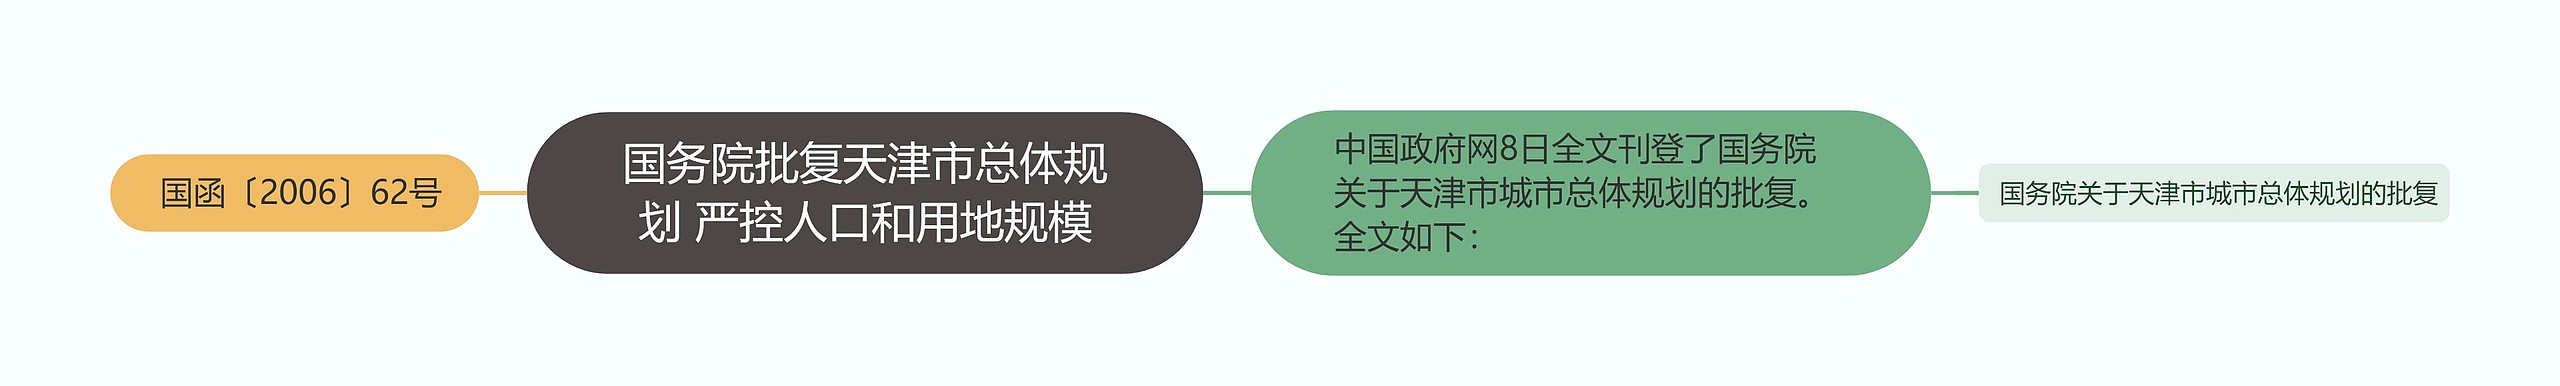 国务院批复天津市总体规划 严控人口和用地规模思维导图